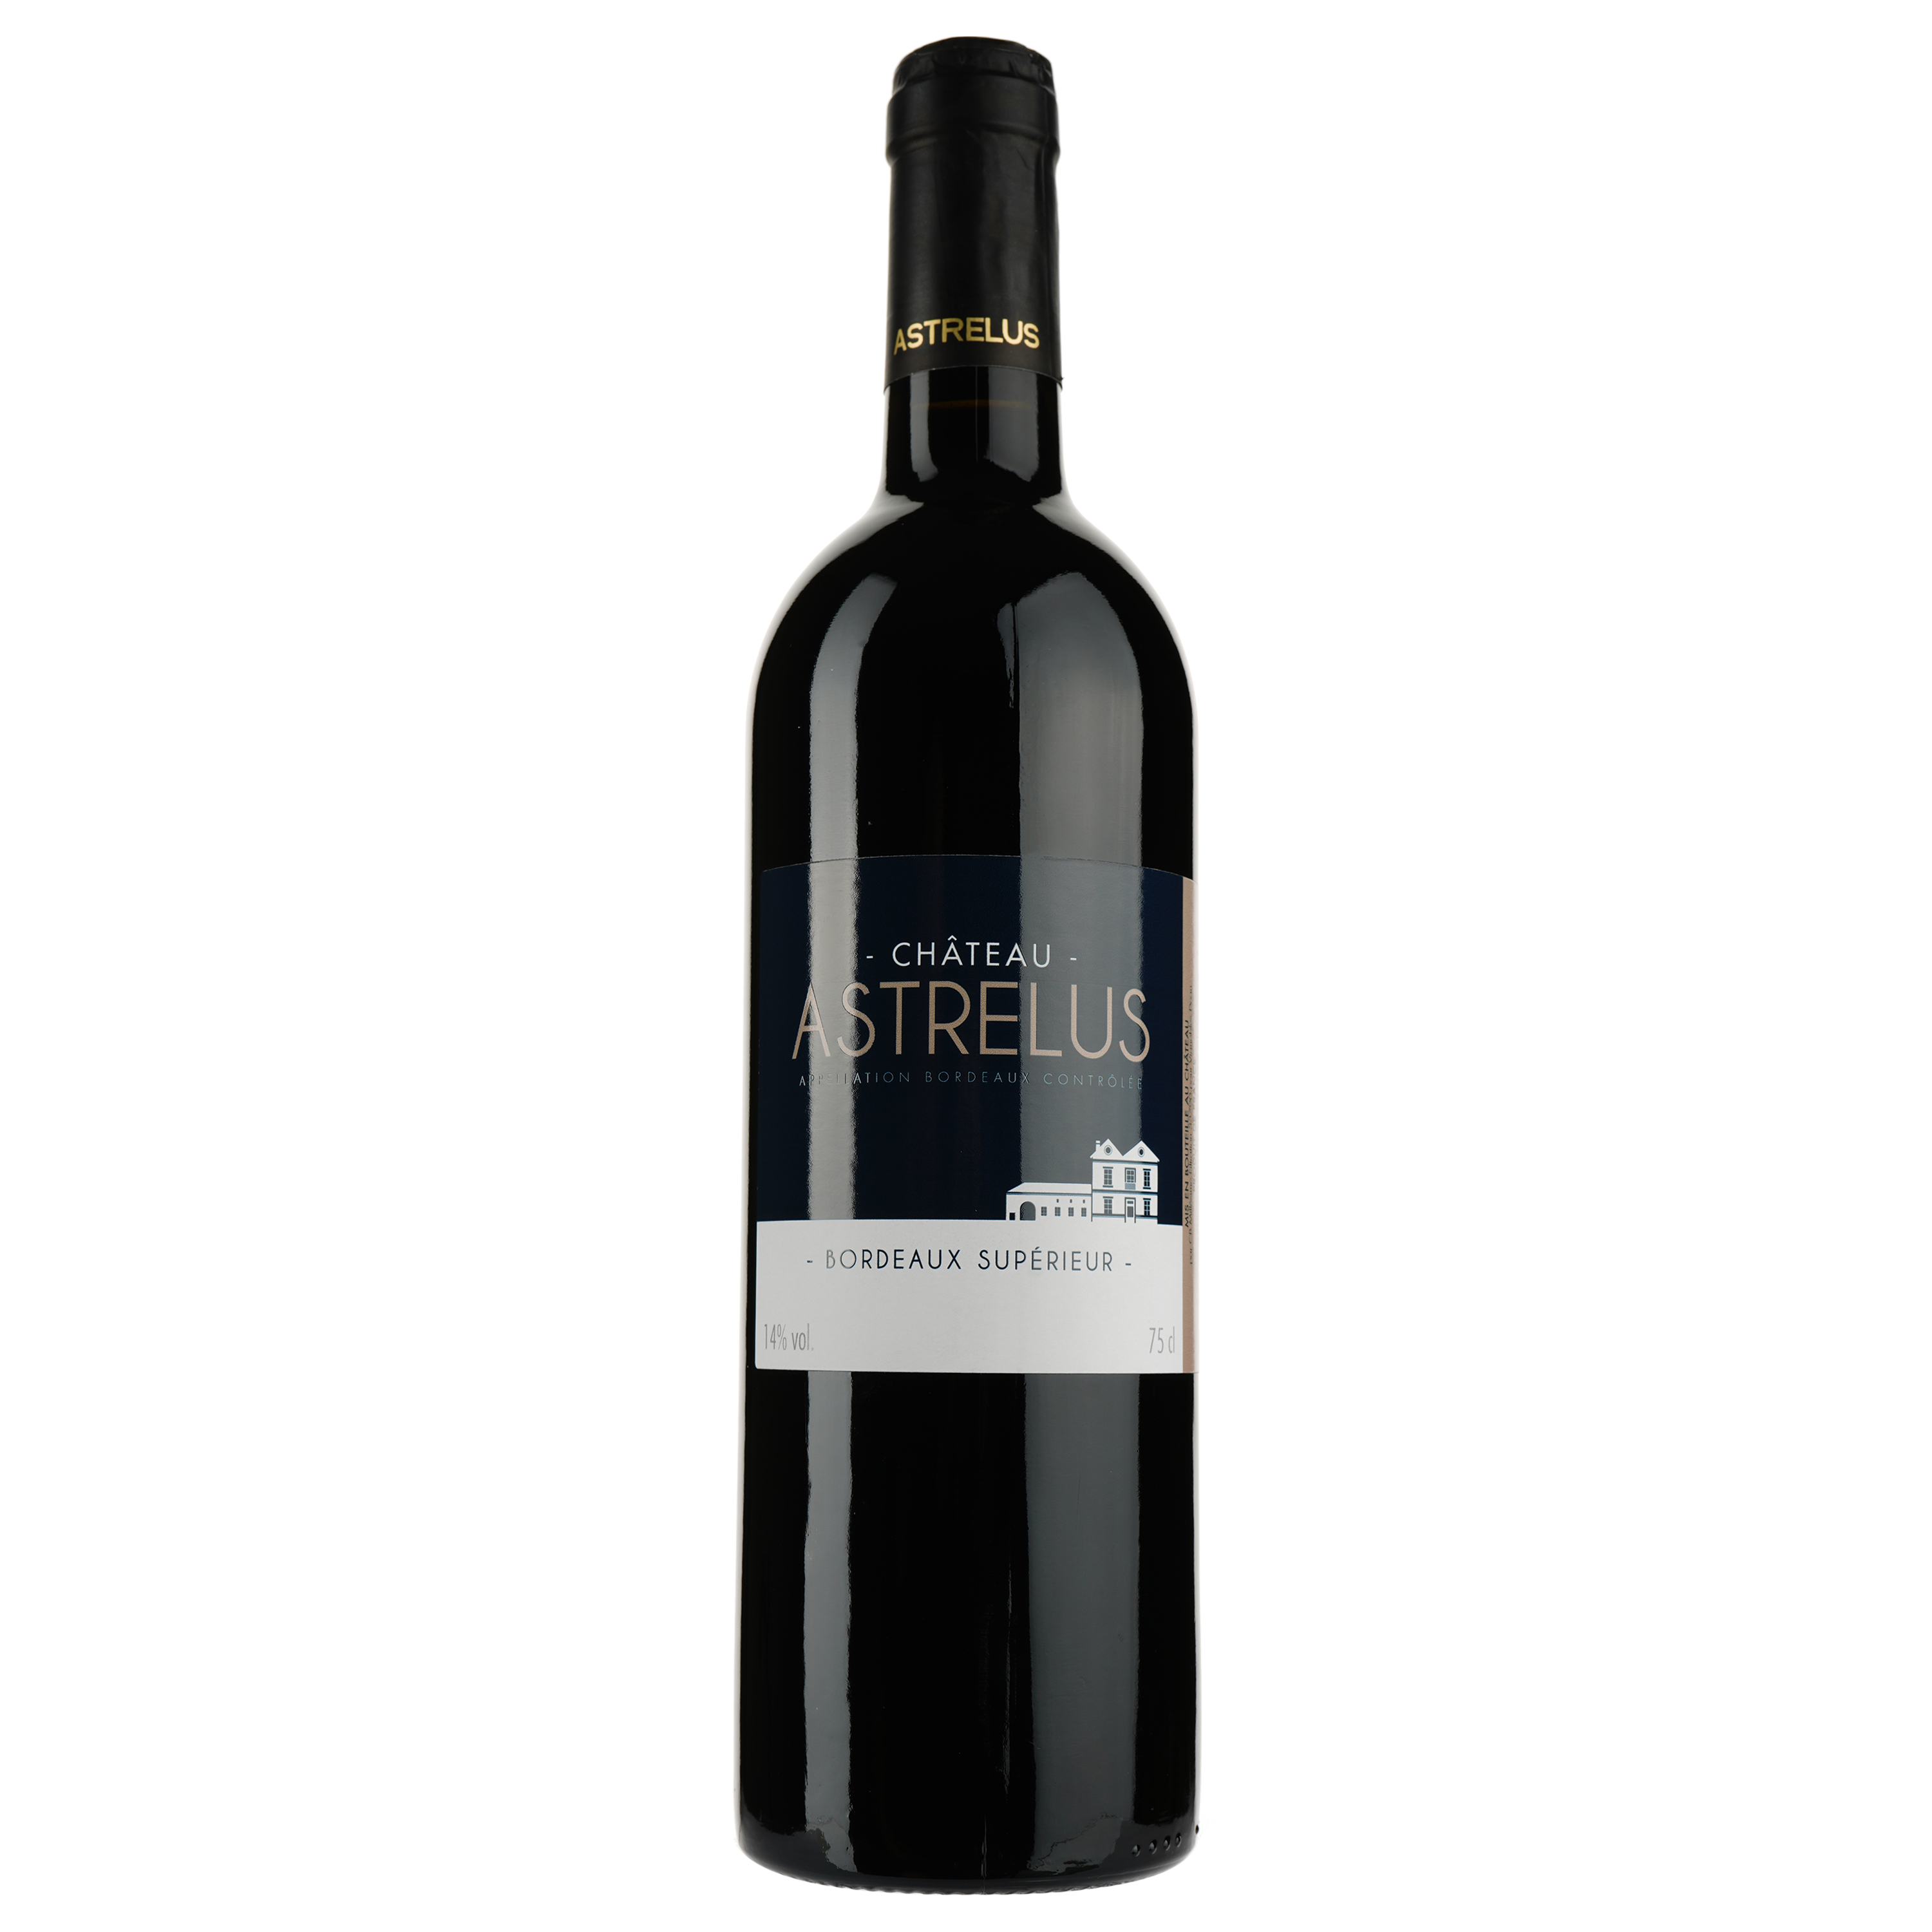 Вино Chateau Astrelus AOP Bordeaux Superieur 2016, червоне, сухе, 0,75 л - фото 1